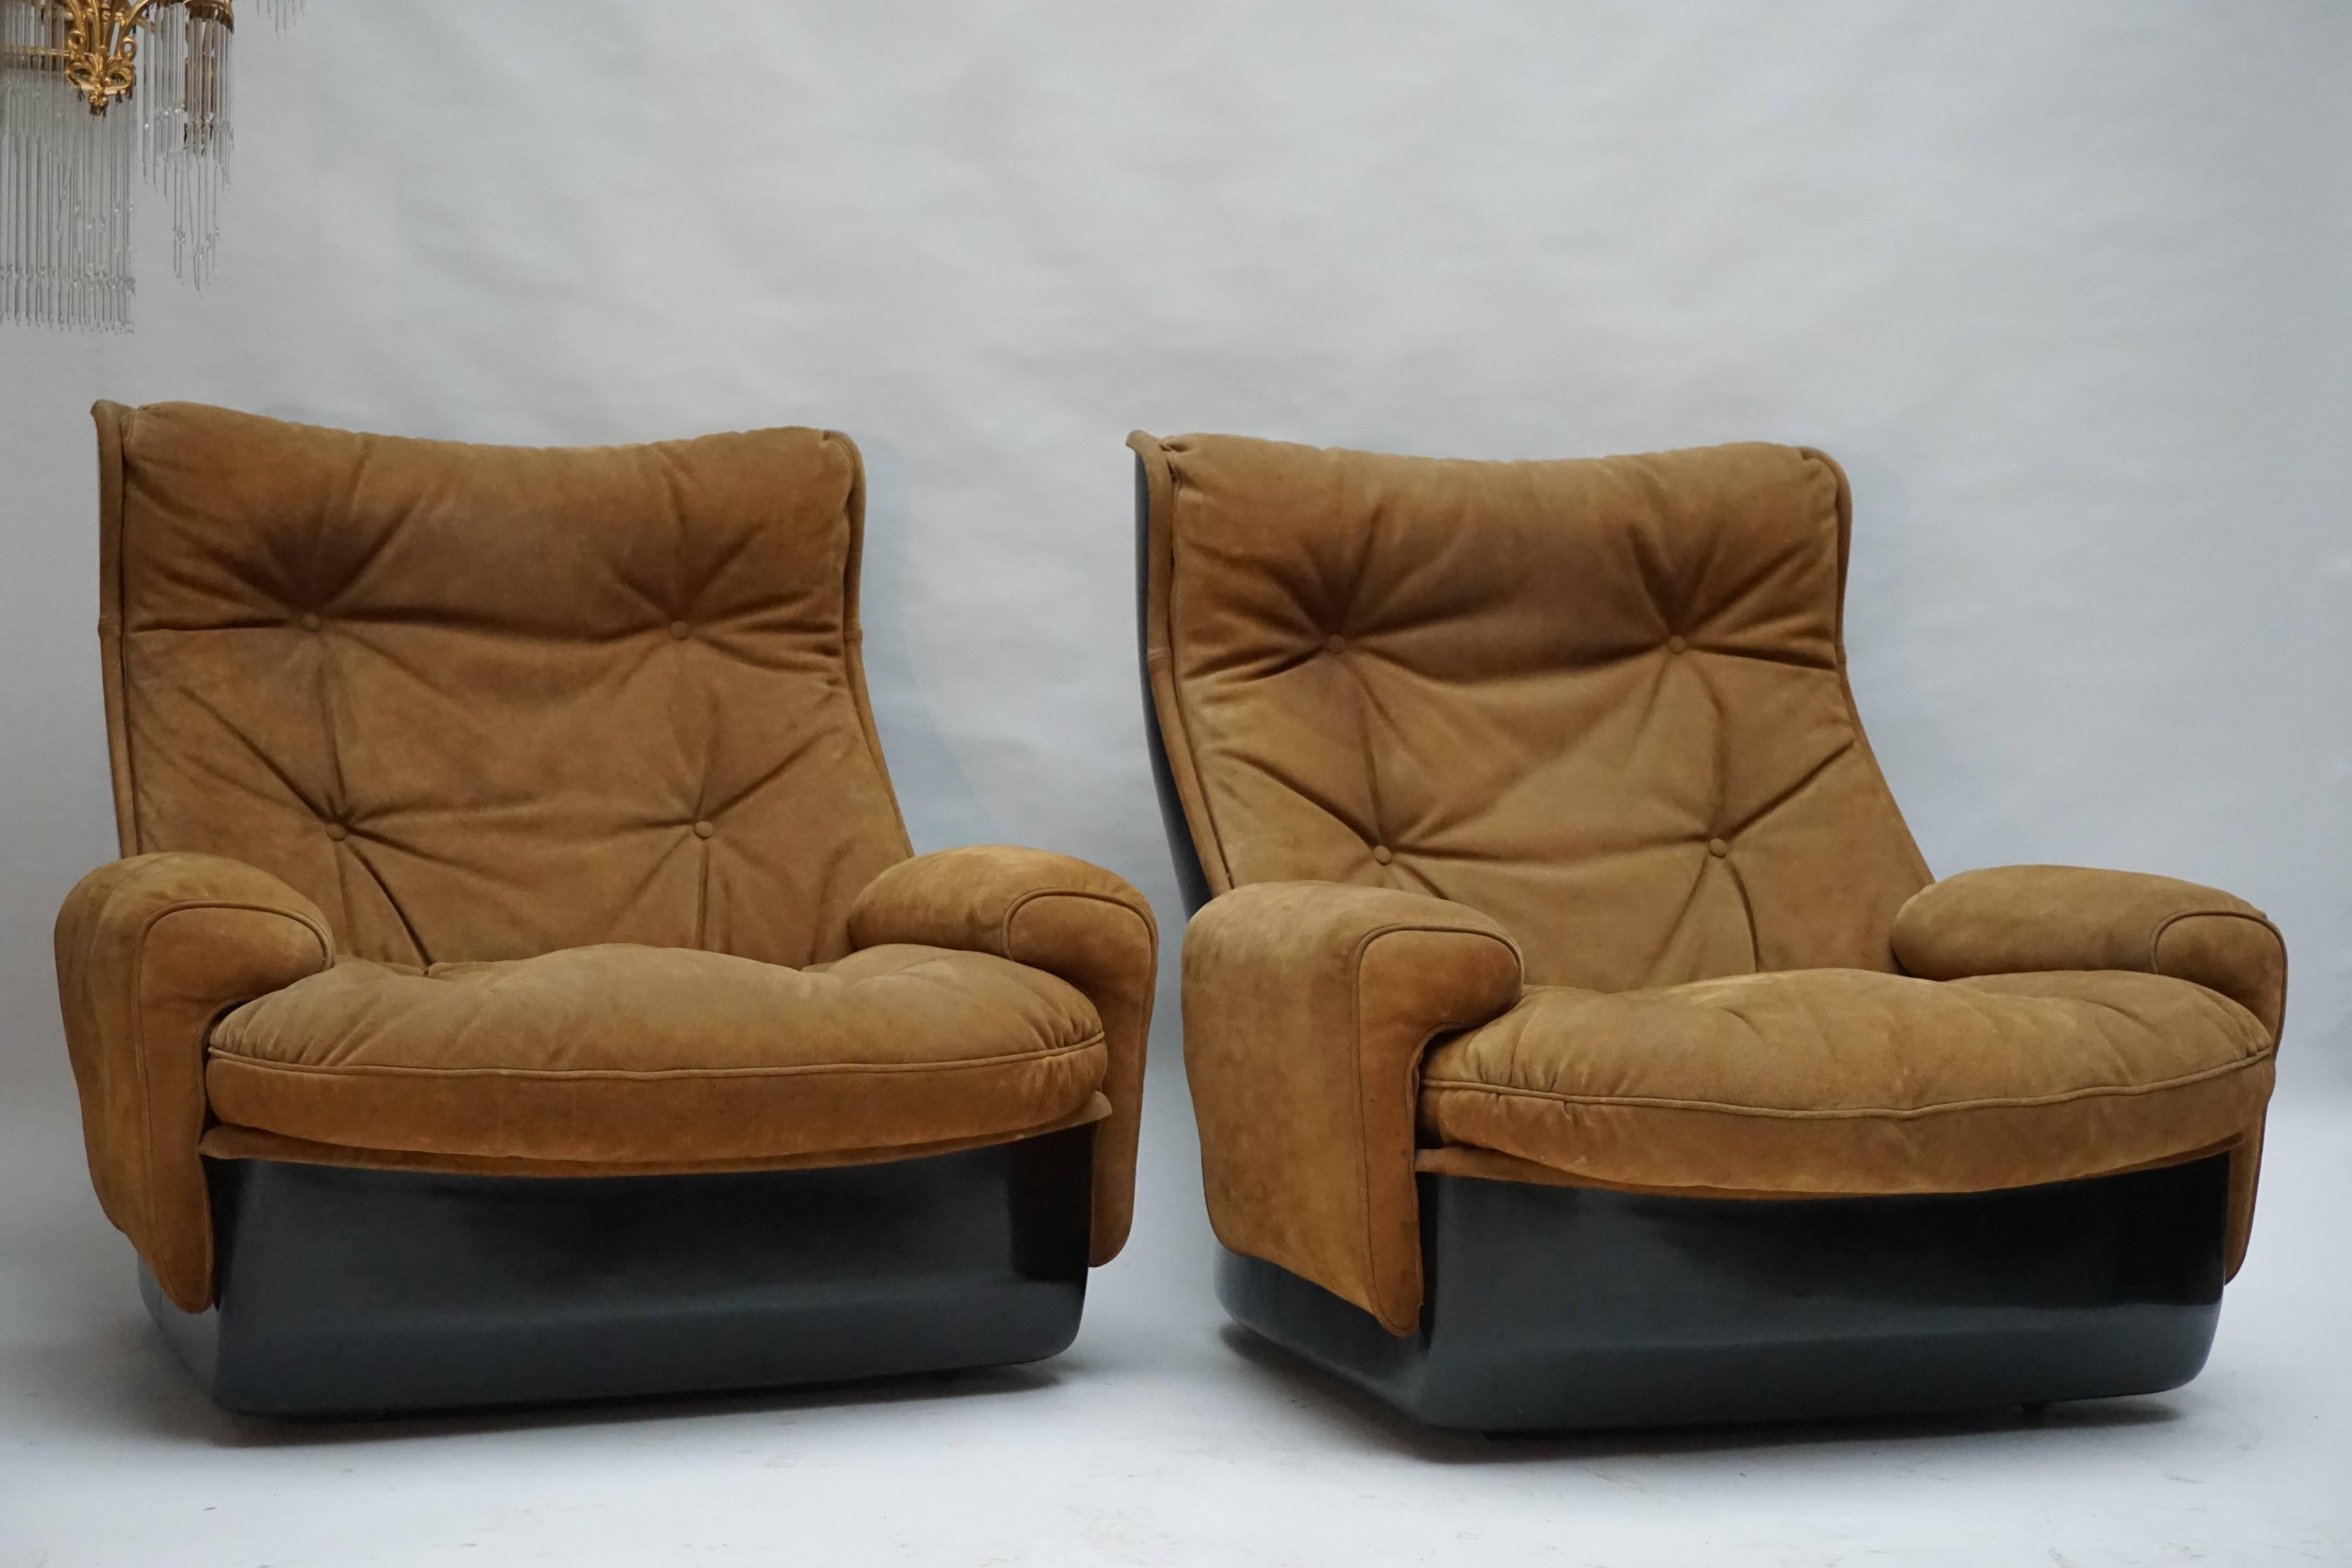 Deux fauteuils de salon sur roulettes constitués par le fabricant français Airborne International. Les coques sont fabriquées en fibre de verre noire et les sièges sont recouverts d'un revêtement en cuir boutonné. Cet ensemble vintage est en bon